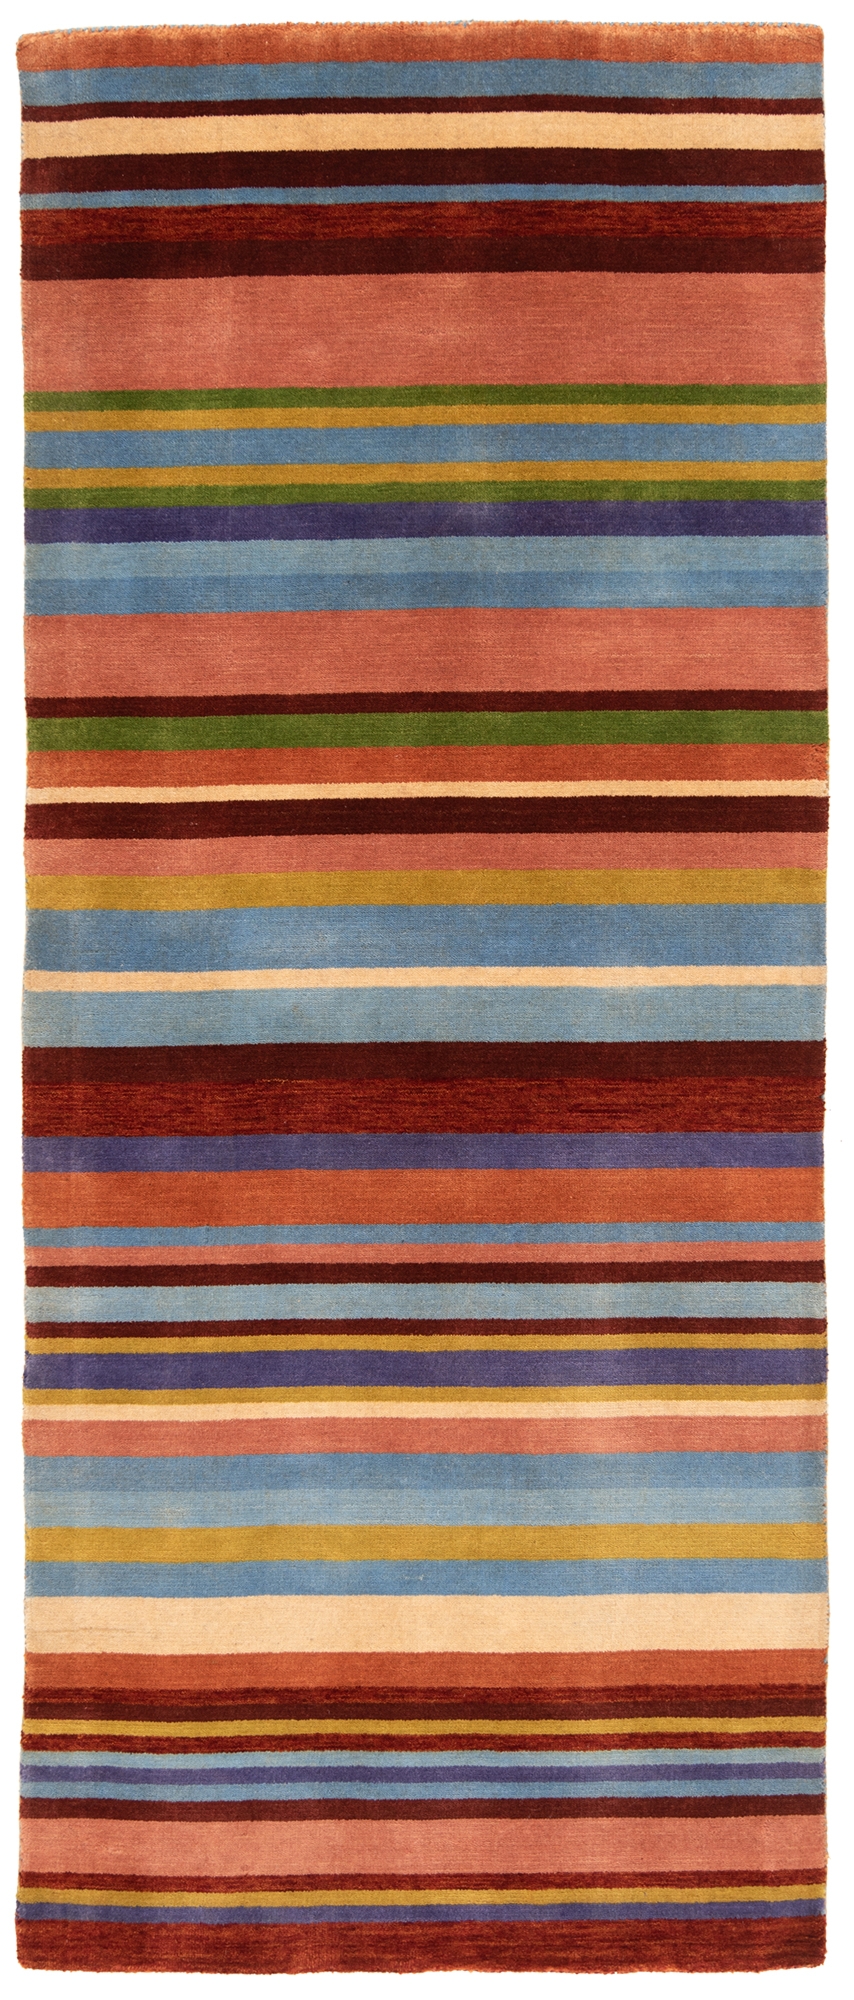 Handloom Rug Multicolor 200 x 83 cm